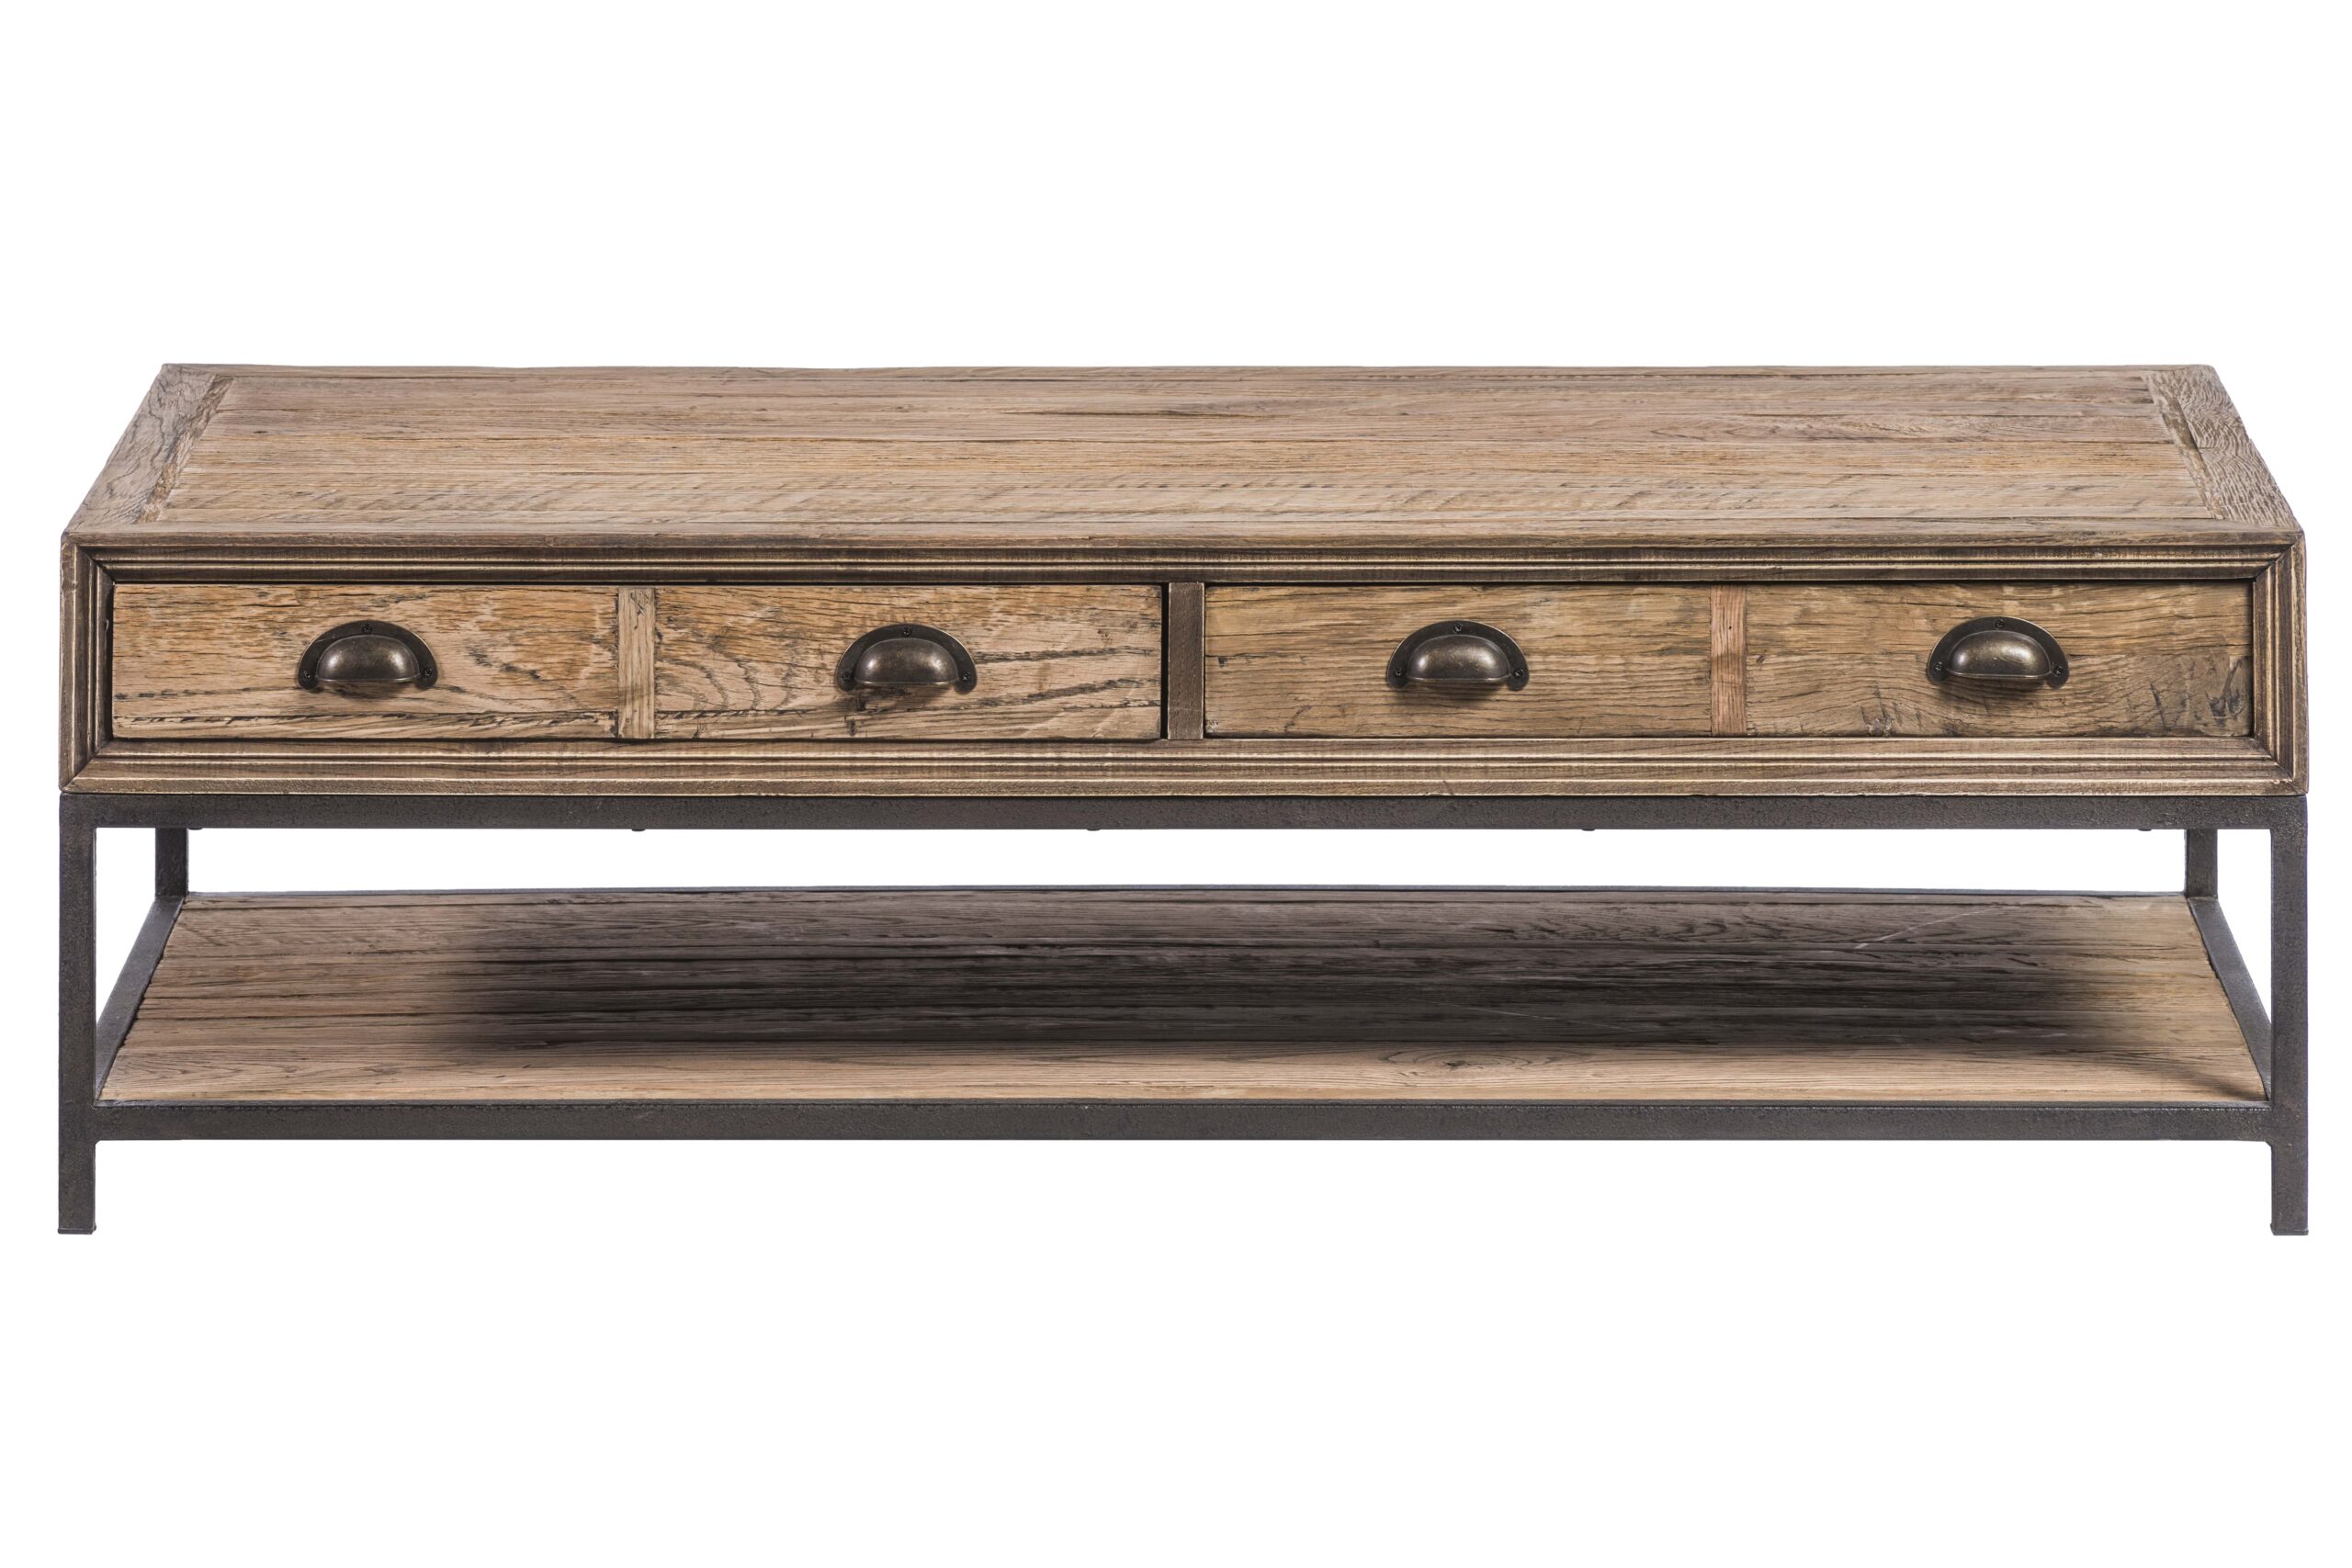 table basse de salon style industriel bois chêne brut massif métal acier gris